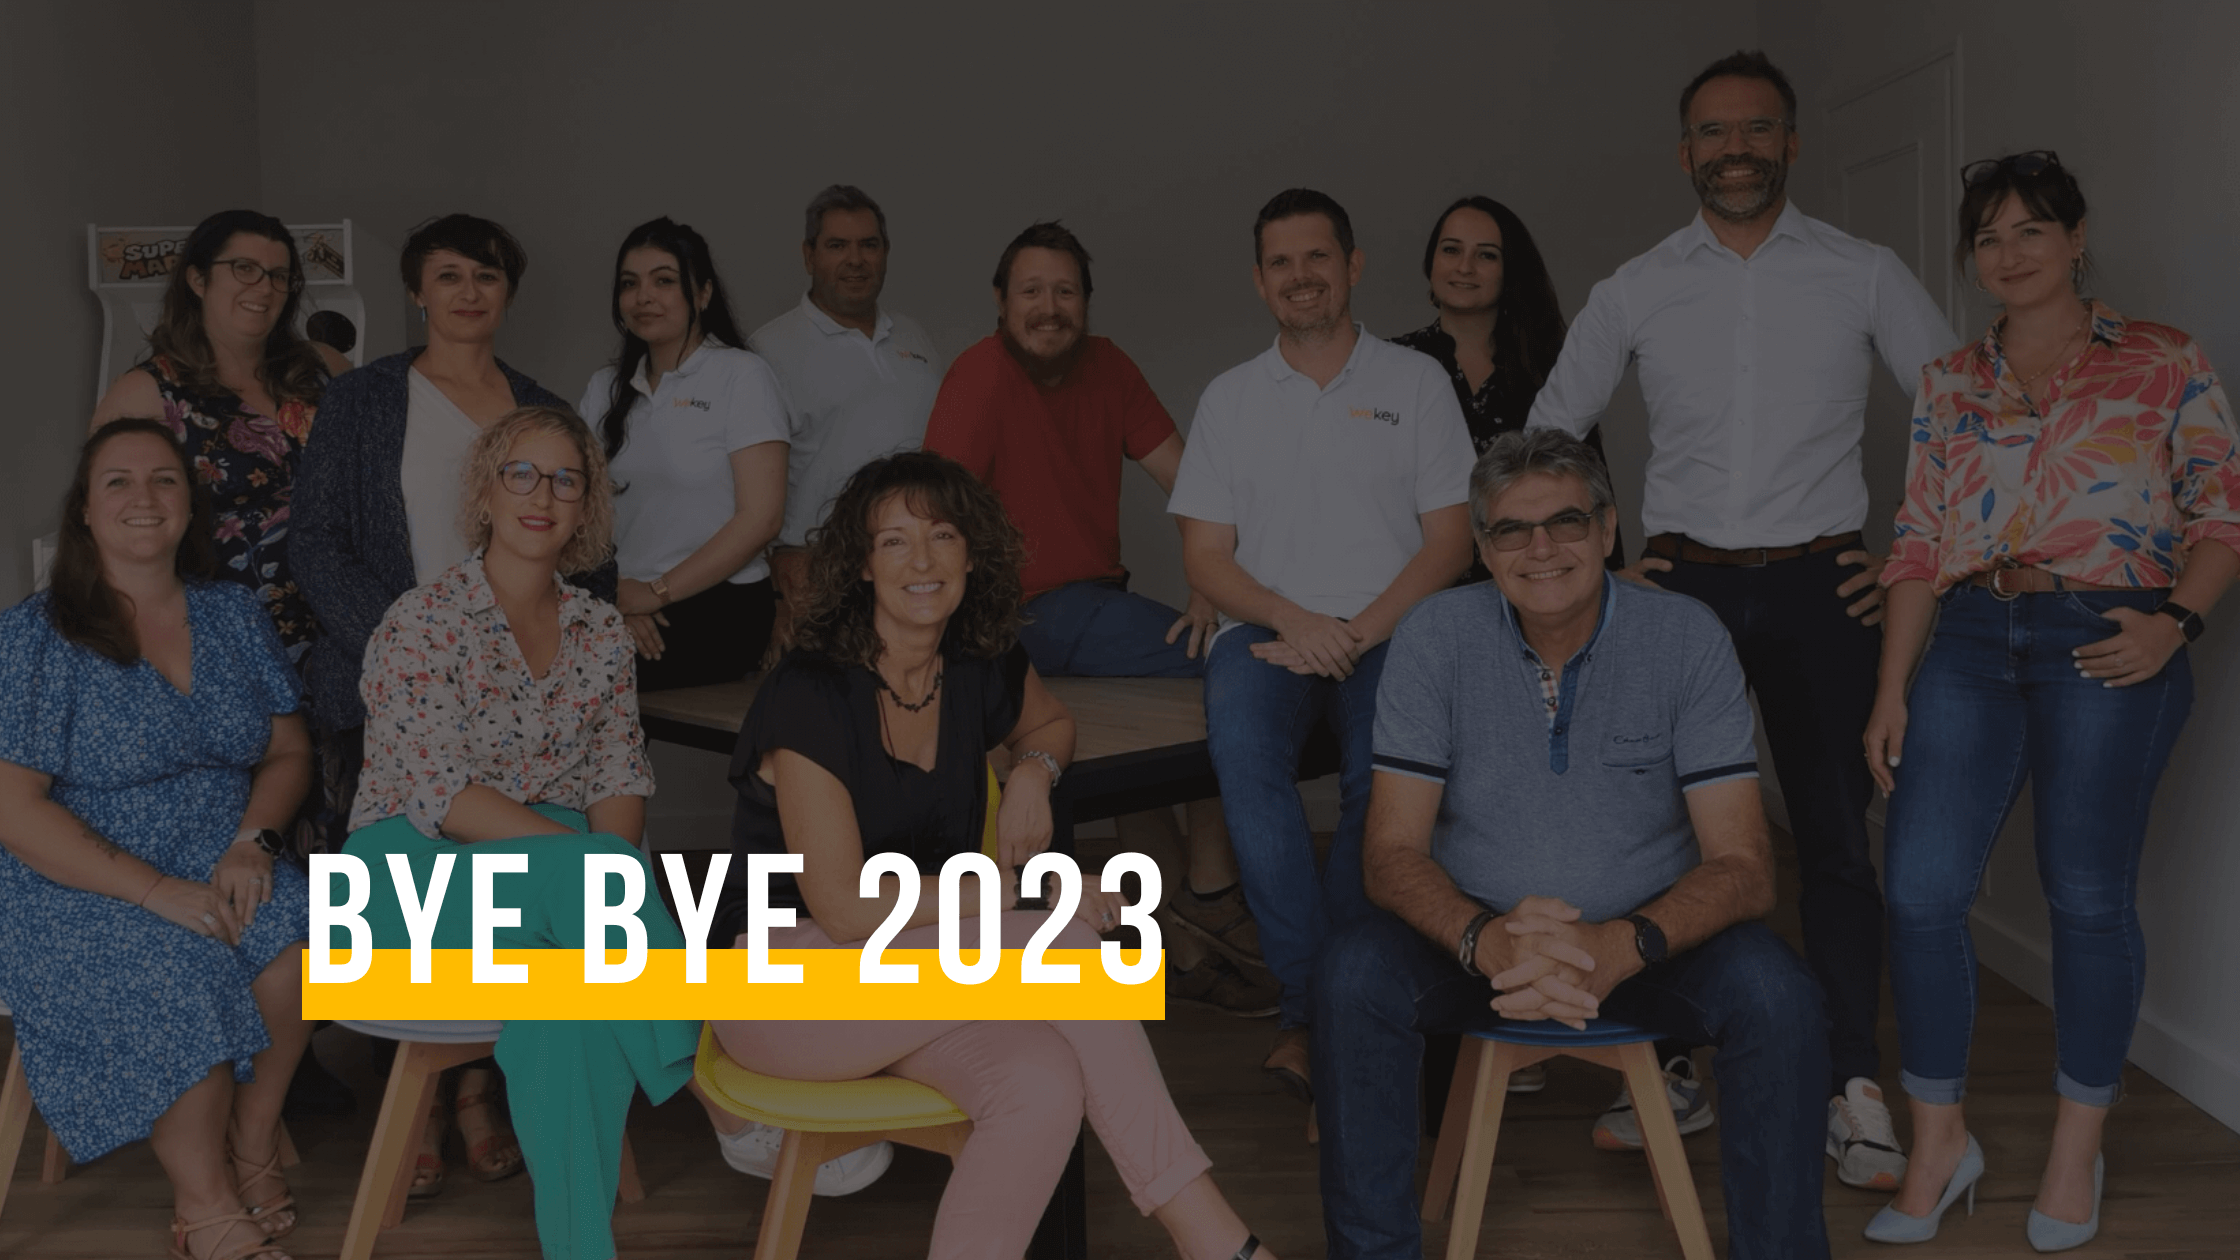 Bye bye 2023, welcome 2024